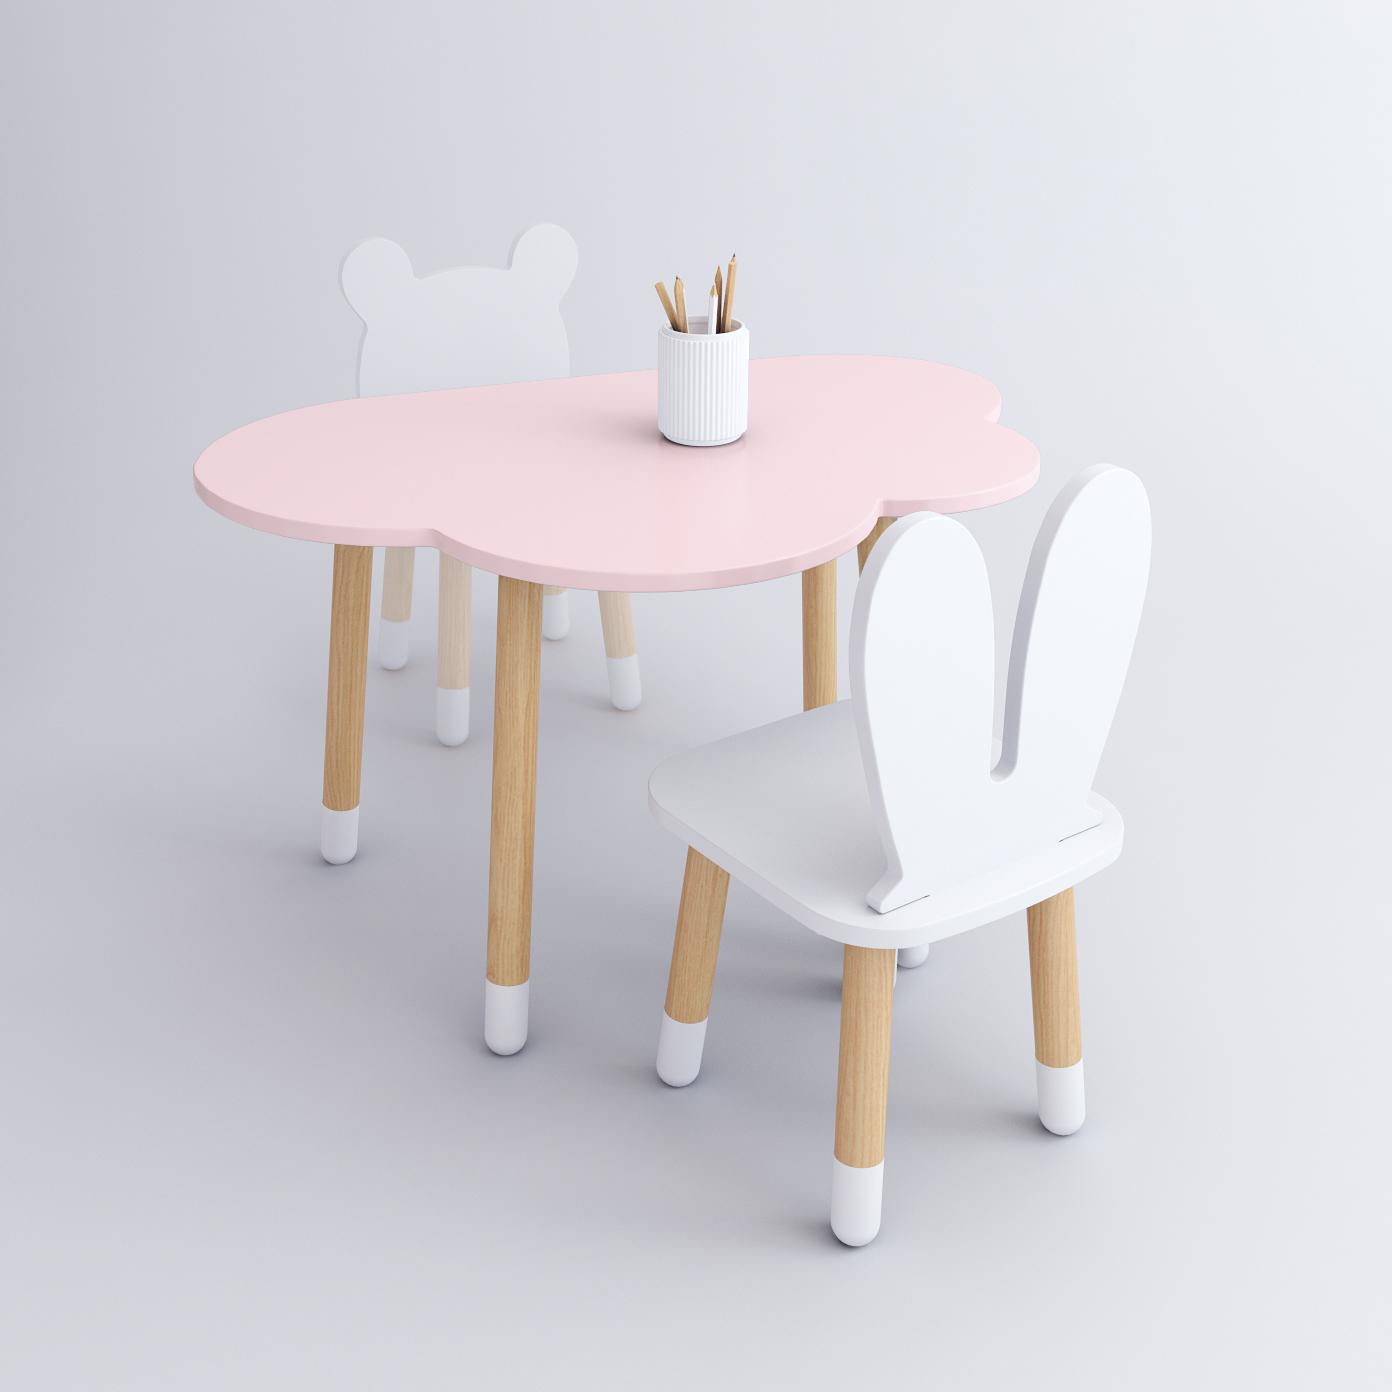 Комплект детской мебели DIMDOM kids, стол Облако розовый, стул Зайка белый